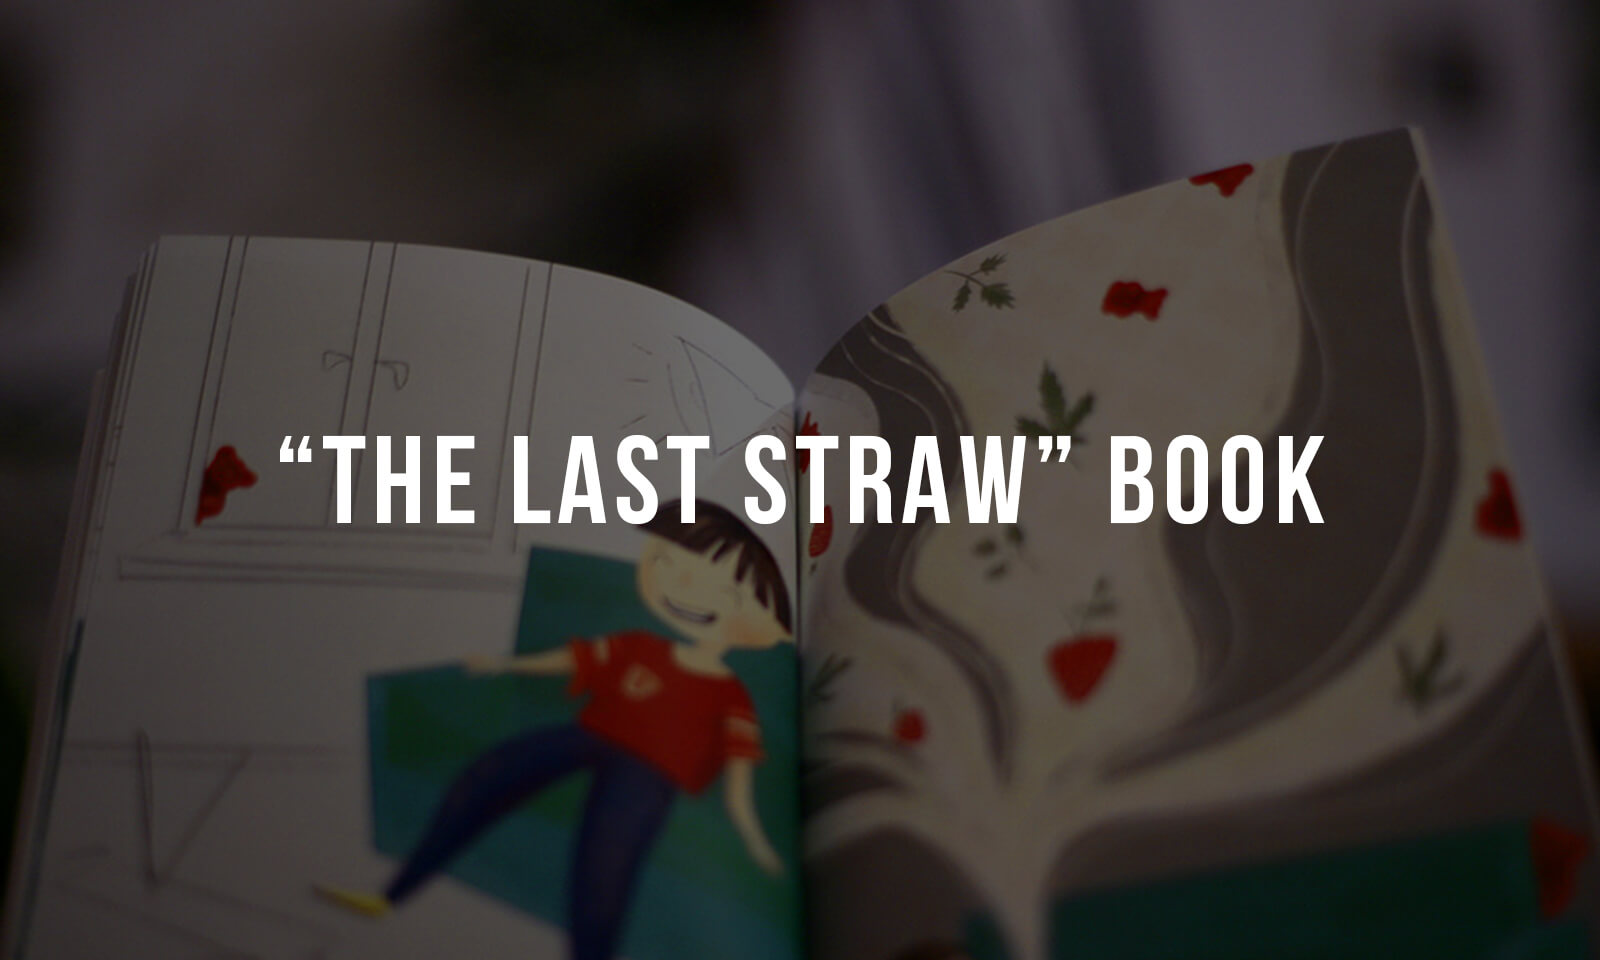 The Last Straw by Katarzyna Doszla